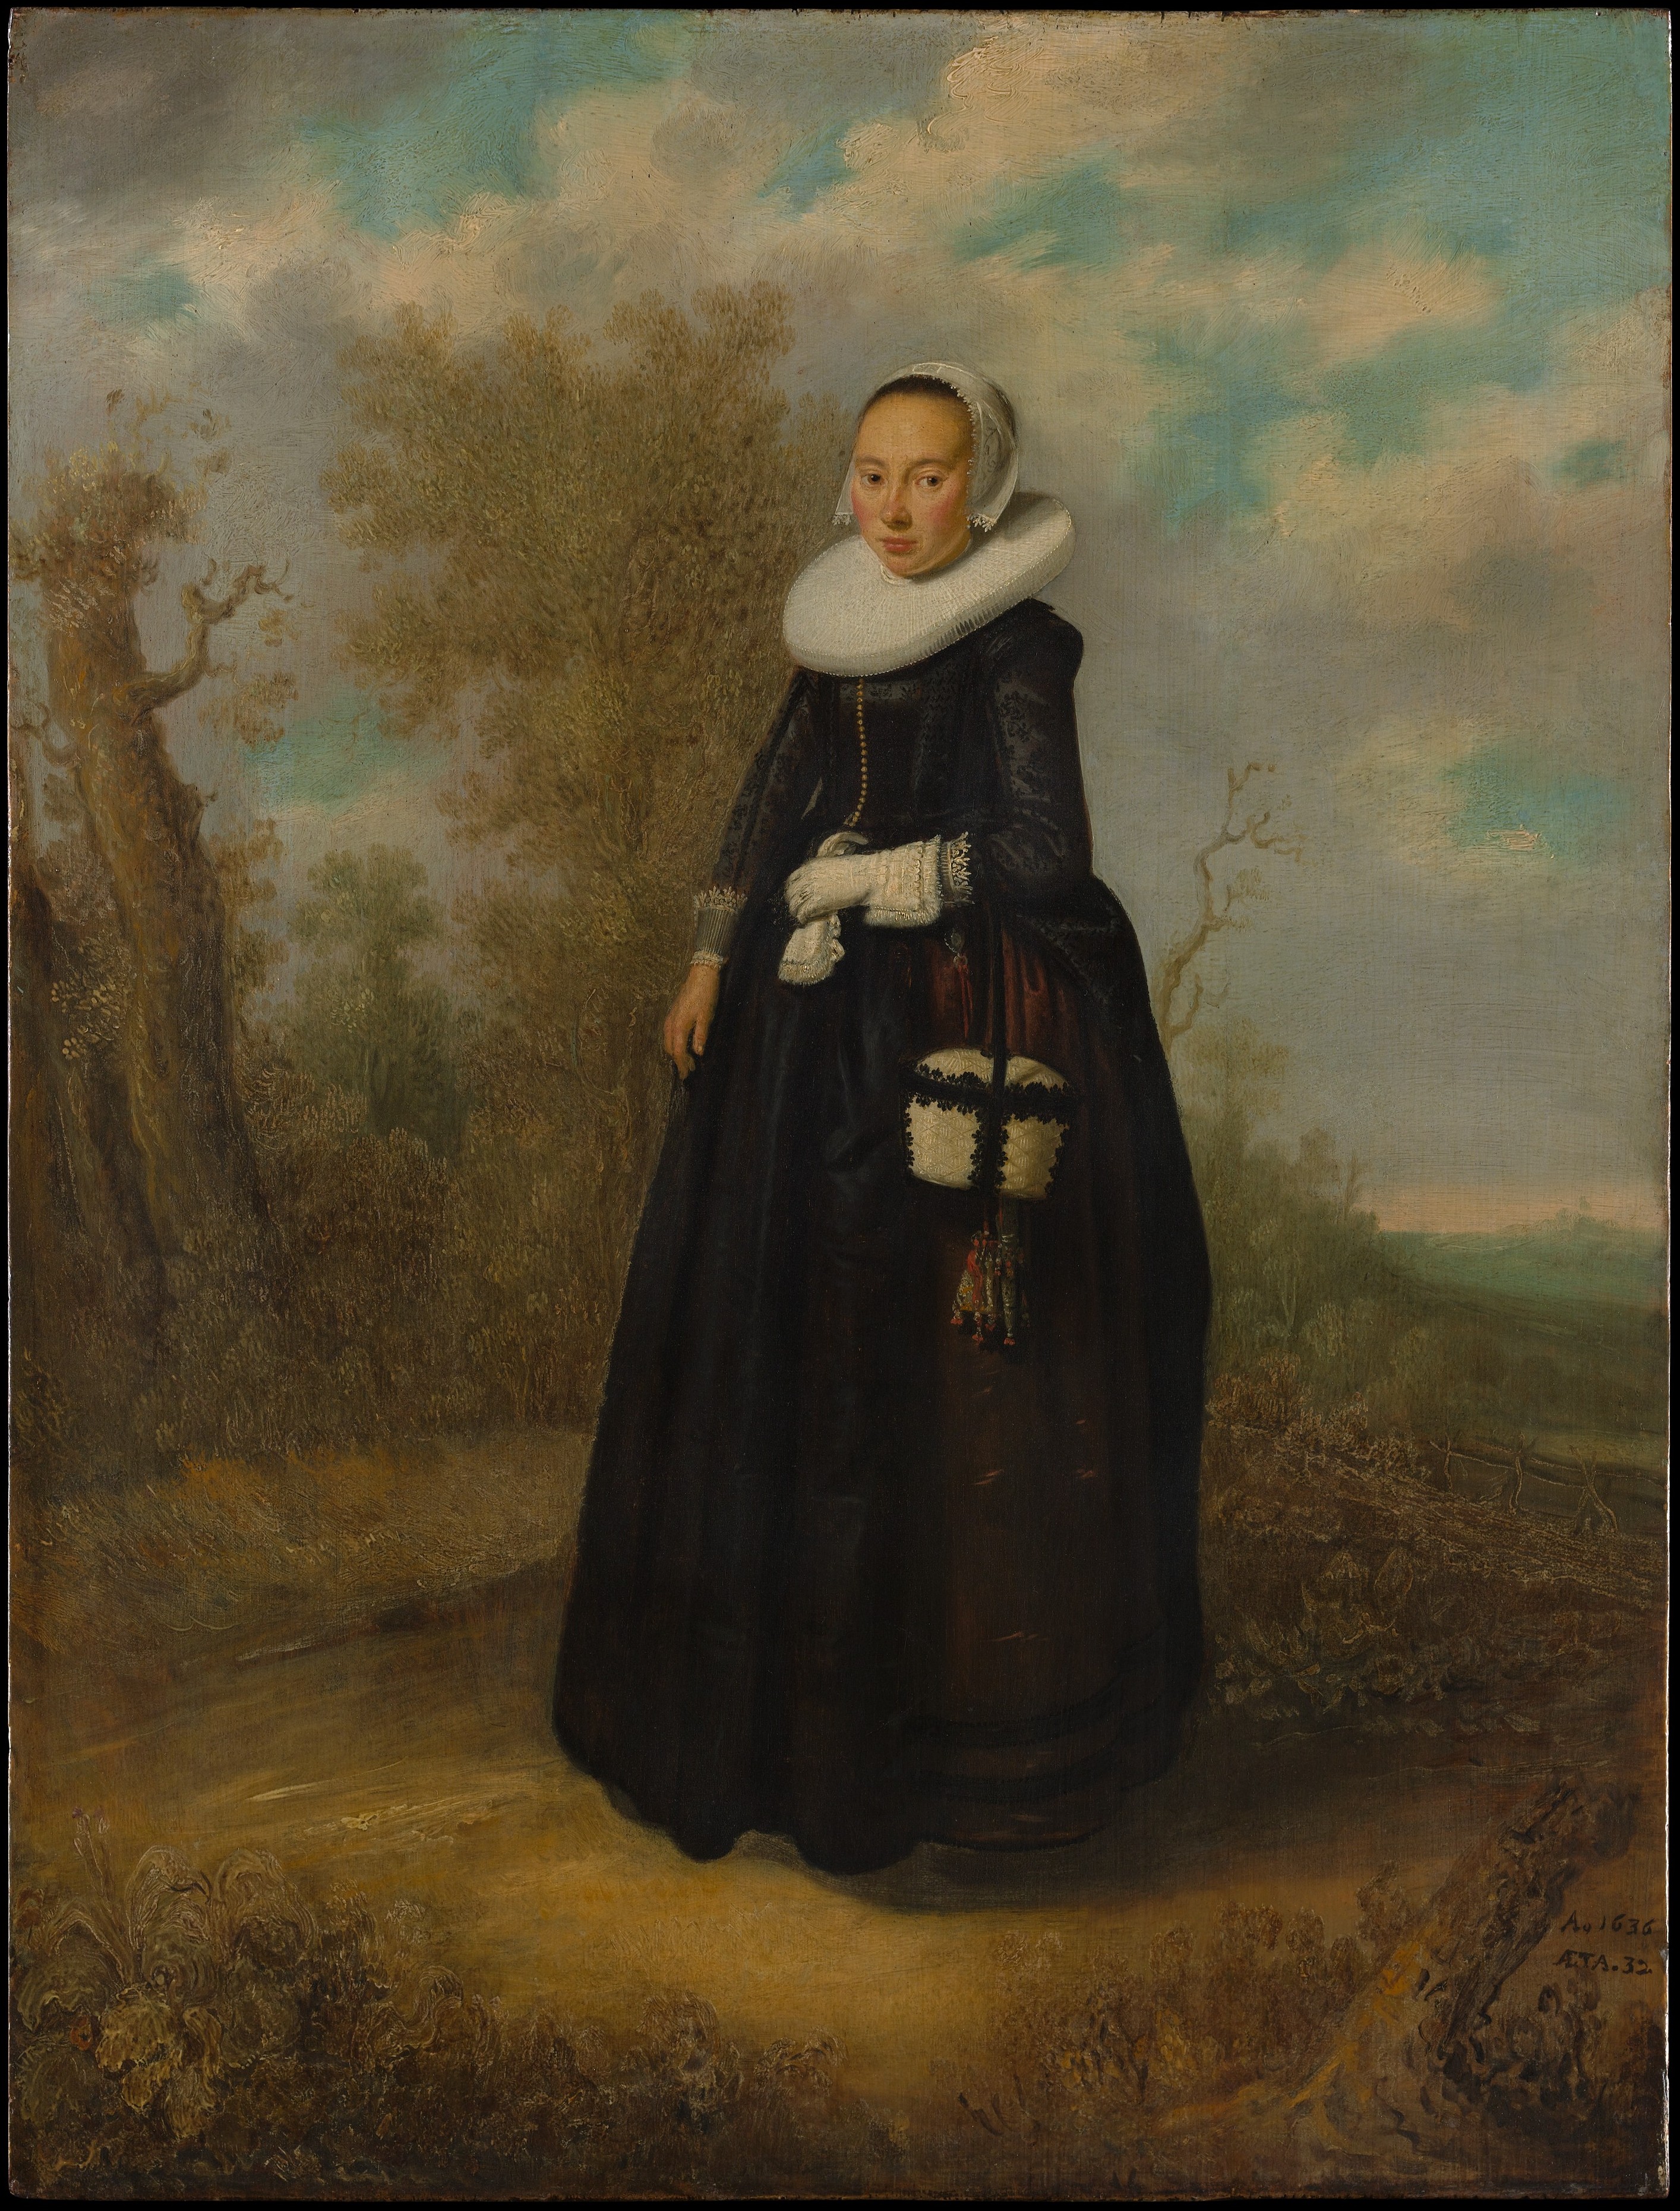 Uma Jovem Mulher numa Paisagem by Artista Desconhecido - 1636 